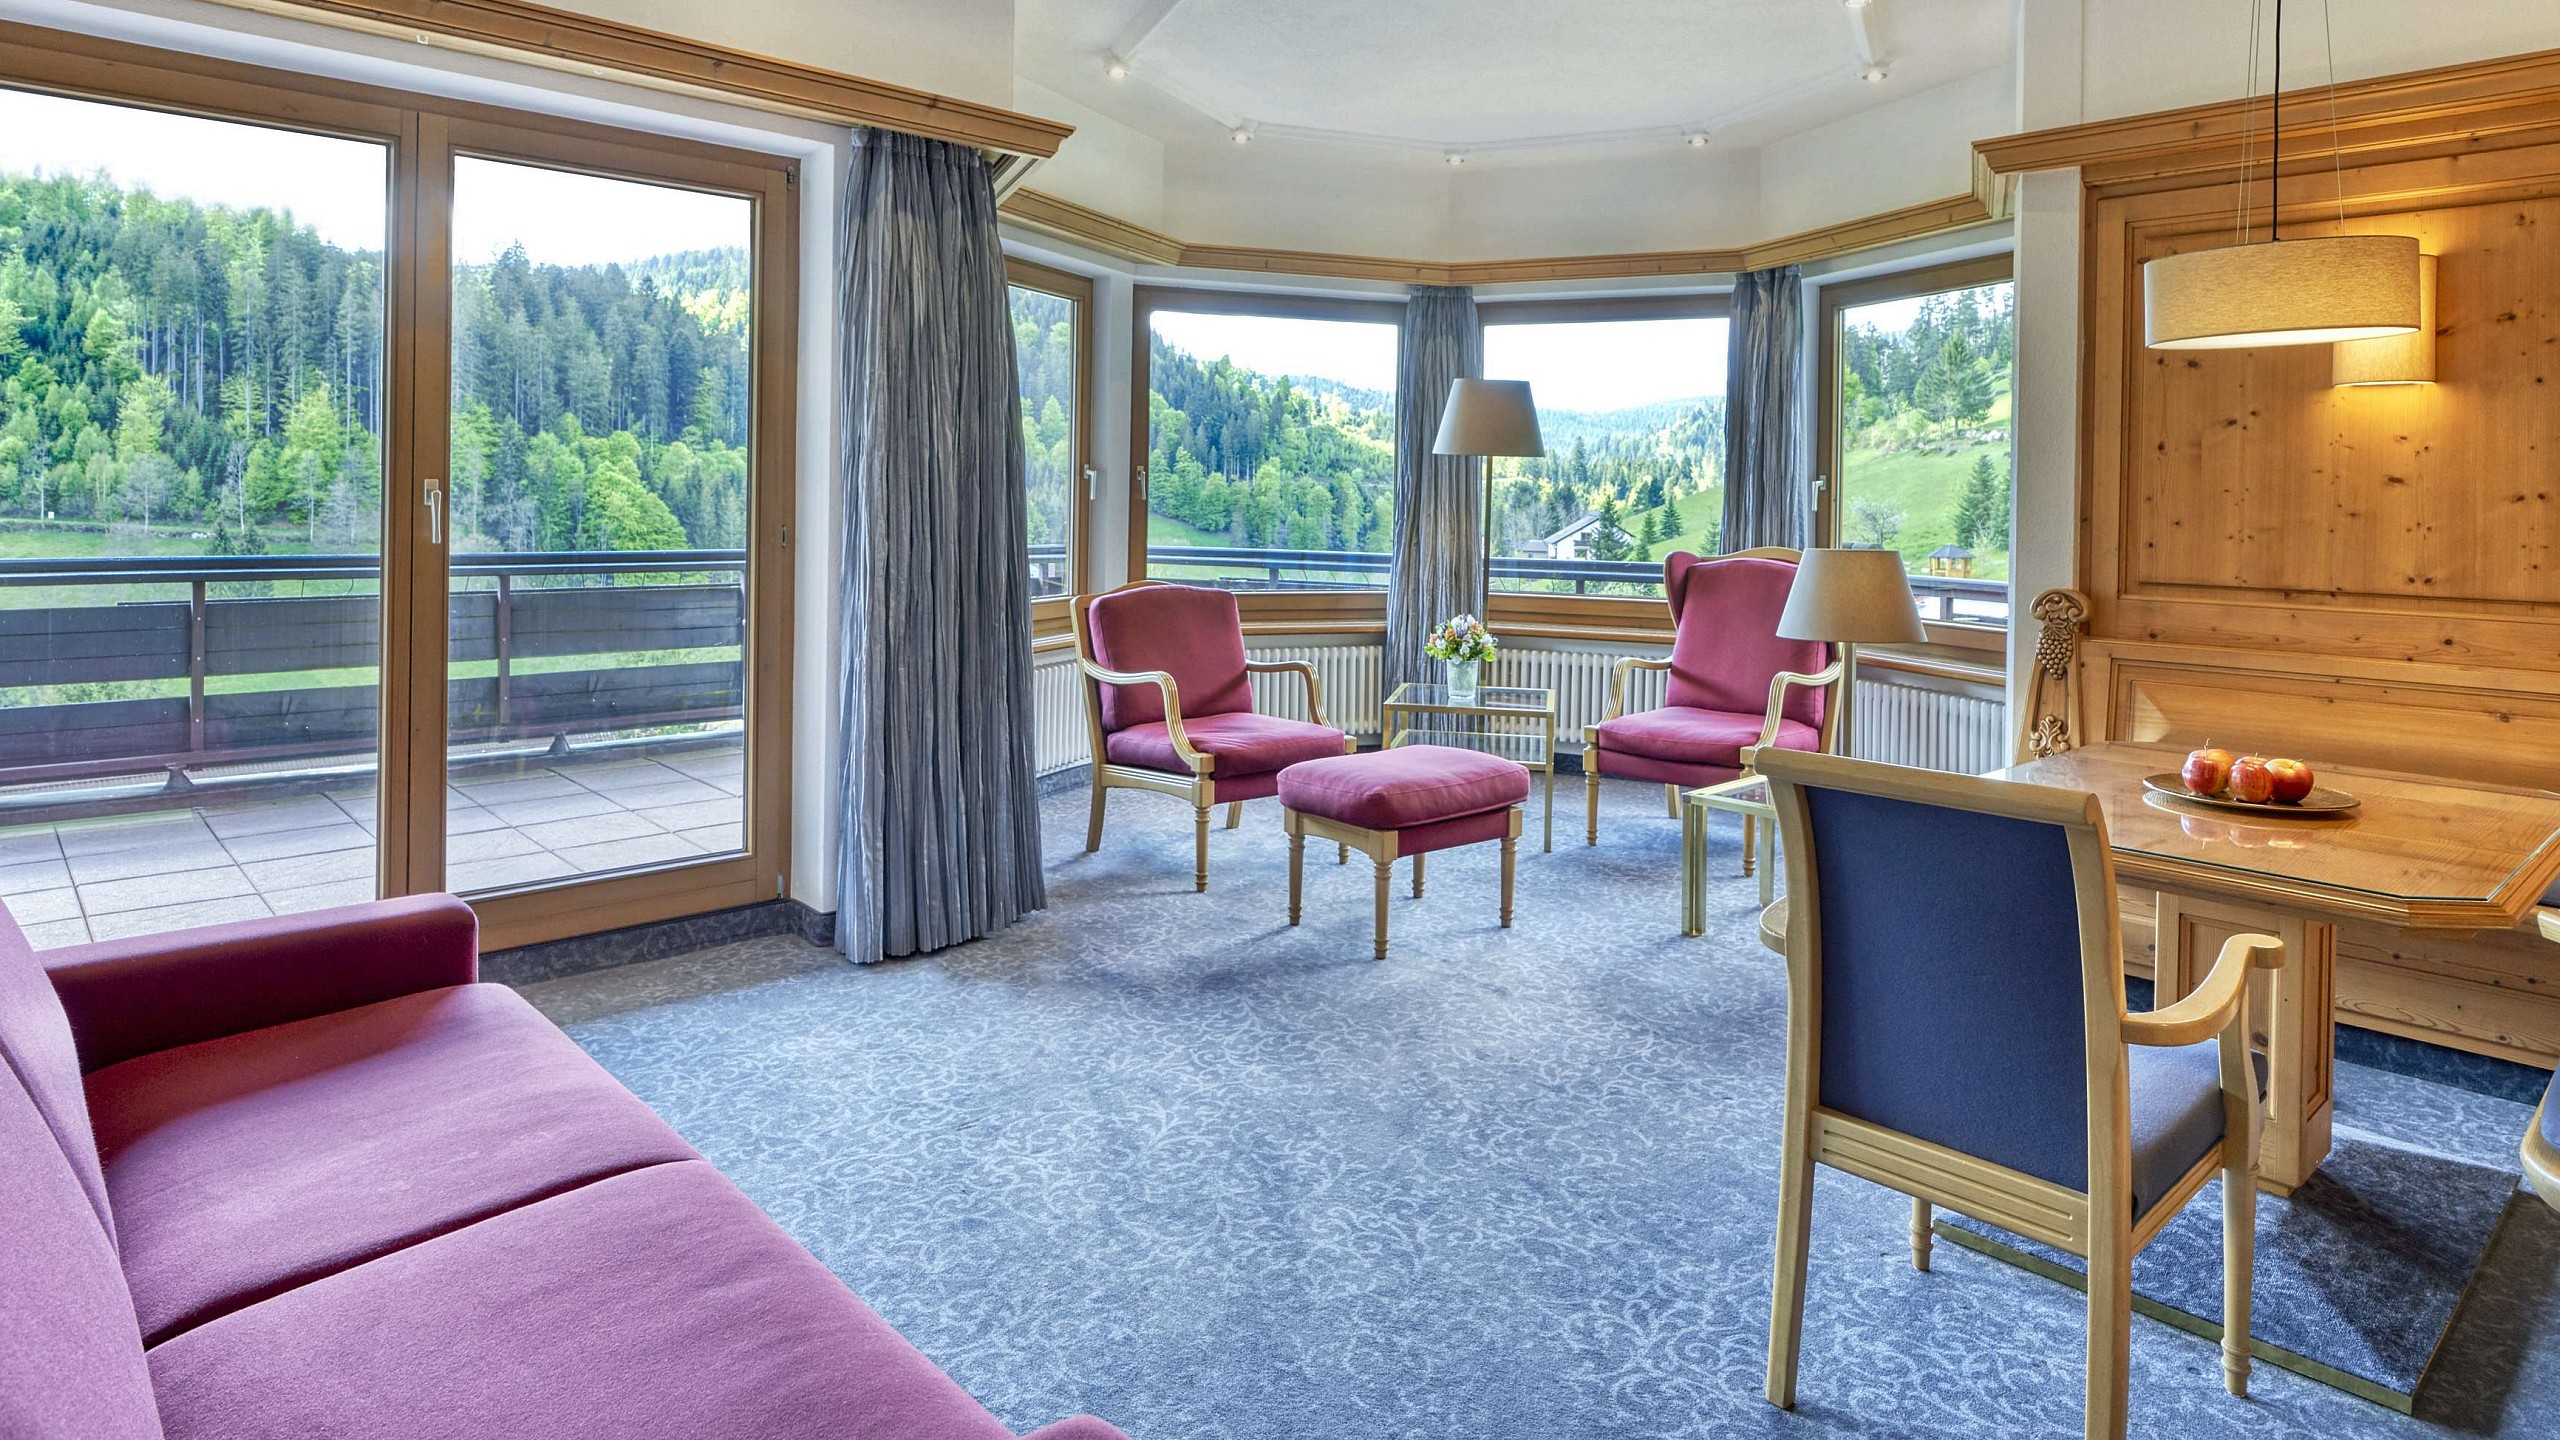 Einladend eingerichtetes Zimmer im 5 Sterne Superior Hotel im Schwarzwald.